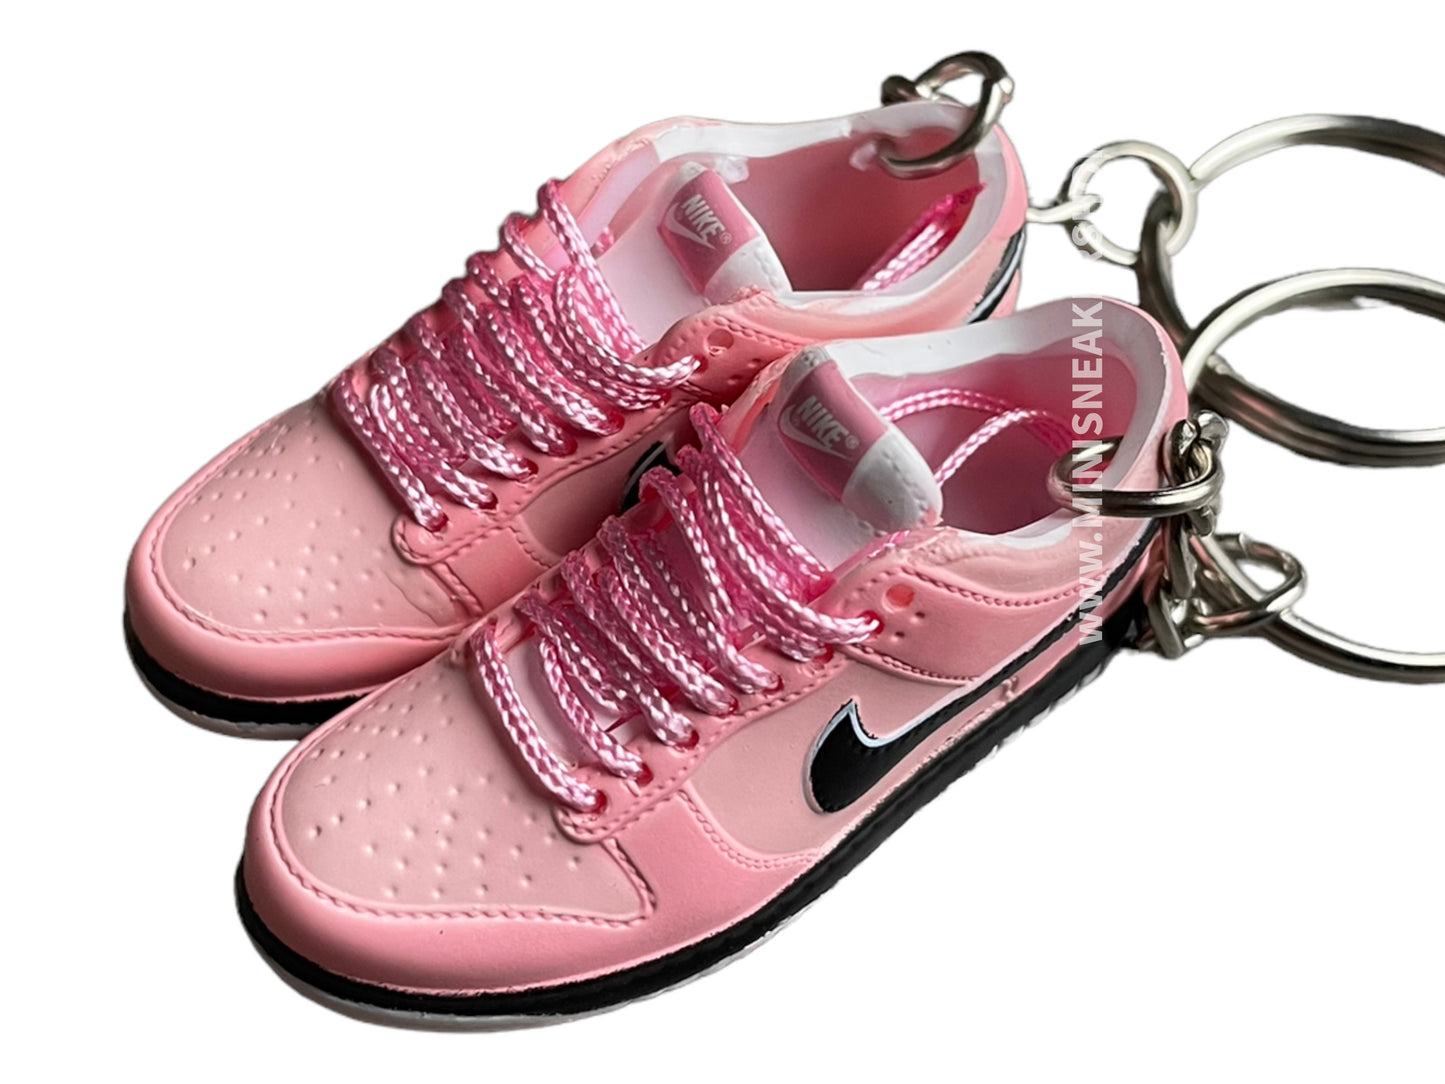 Mini sneaker keychain 3D Dunk - Pink shades